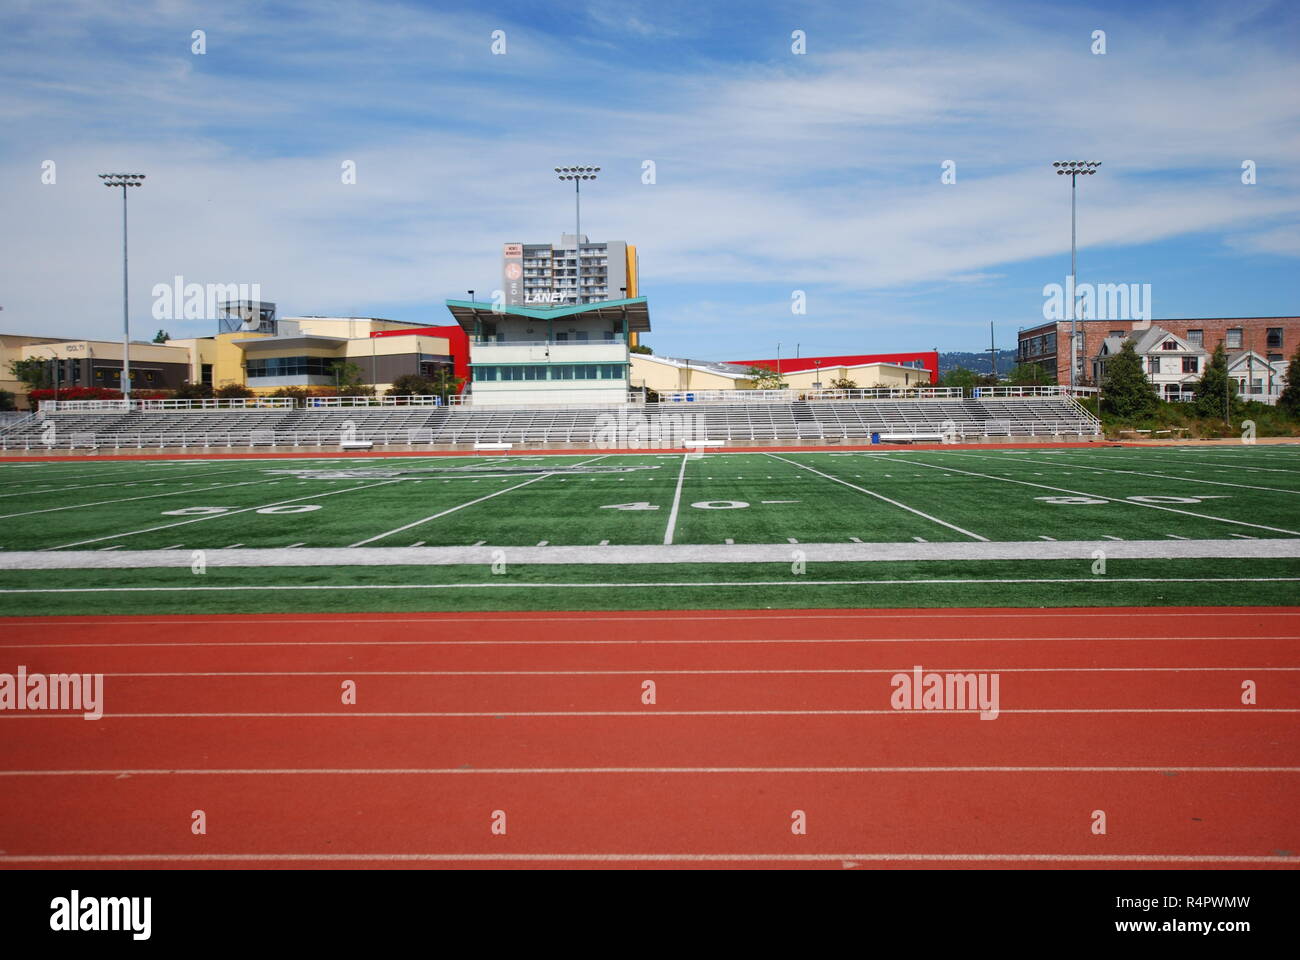 Das Fußballfeld und Anschluss an Laney College in Oakland, Kalifornien, am 4. Mai 2017 fotografiert. Stockfoto